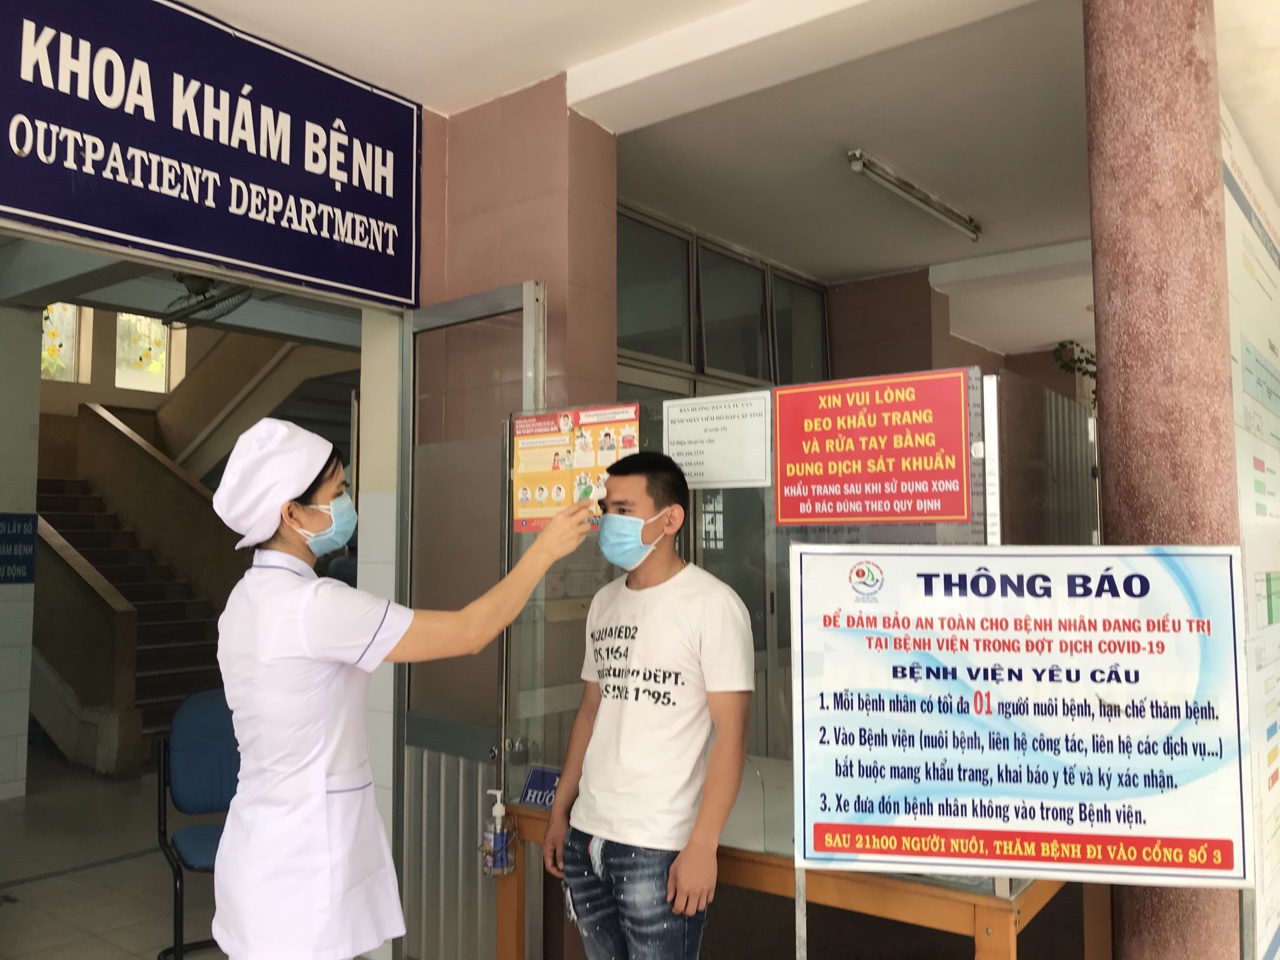 Bệnh viện Đa khoa tỉnh Khánh Hoà kiểm tra thân nhiệt người đến khám bệnh